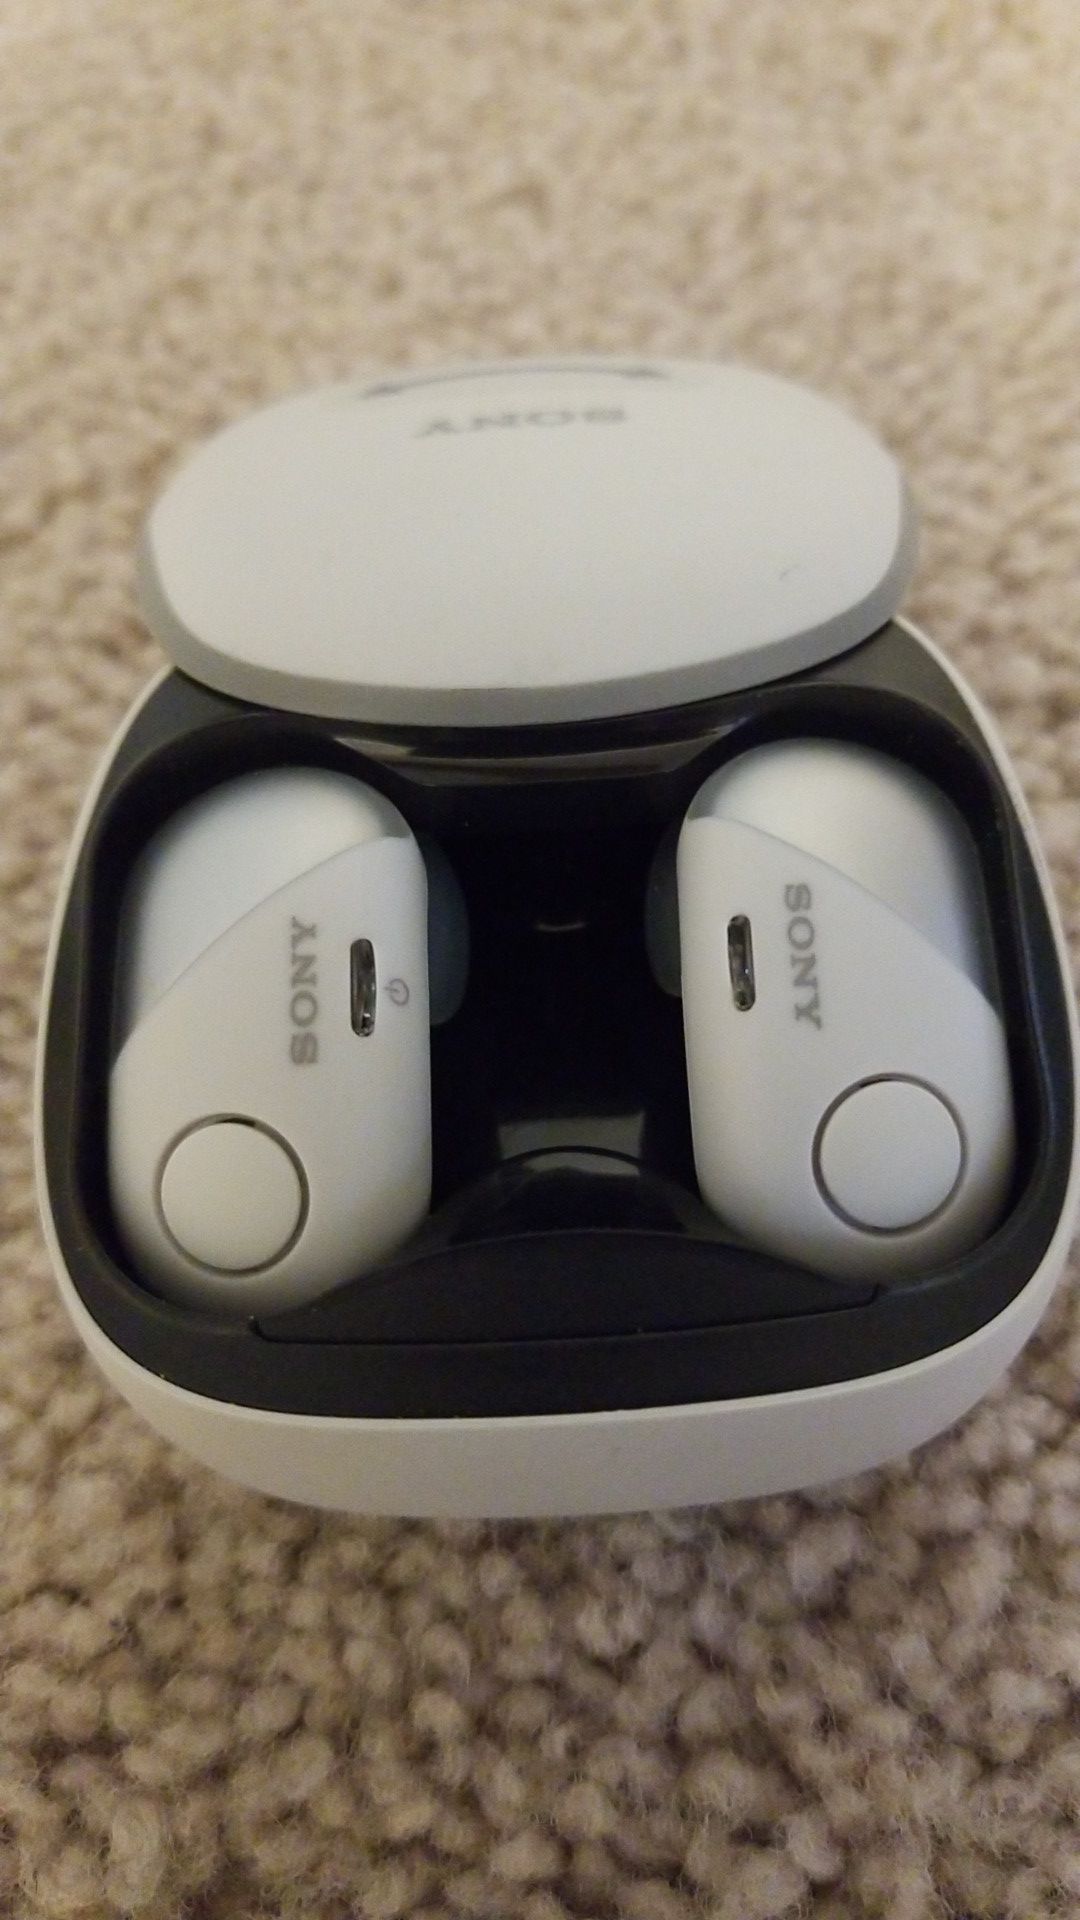 Sony sp700n wireless earbuds